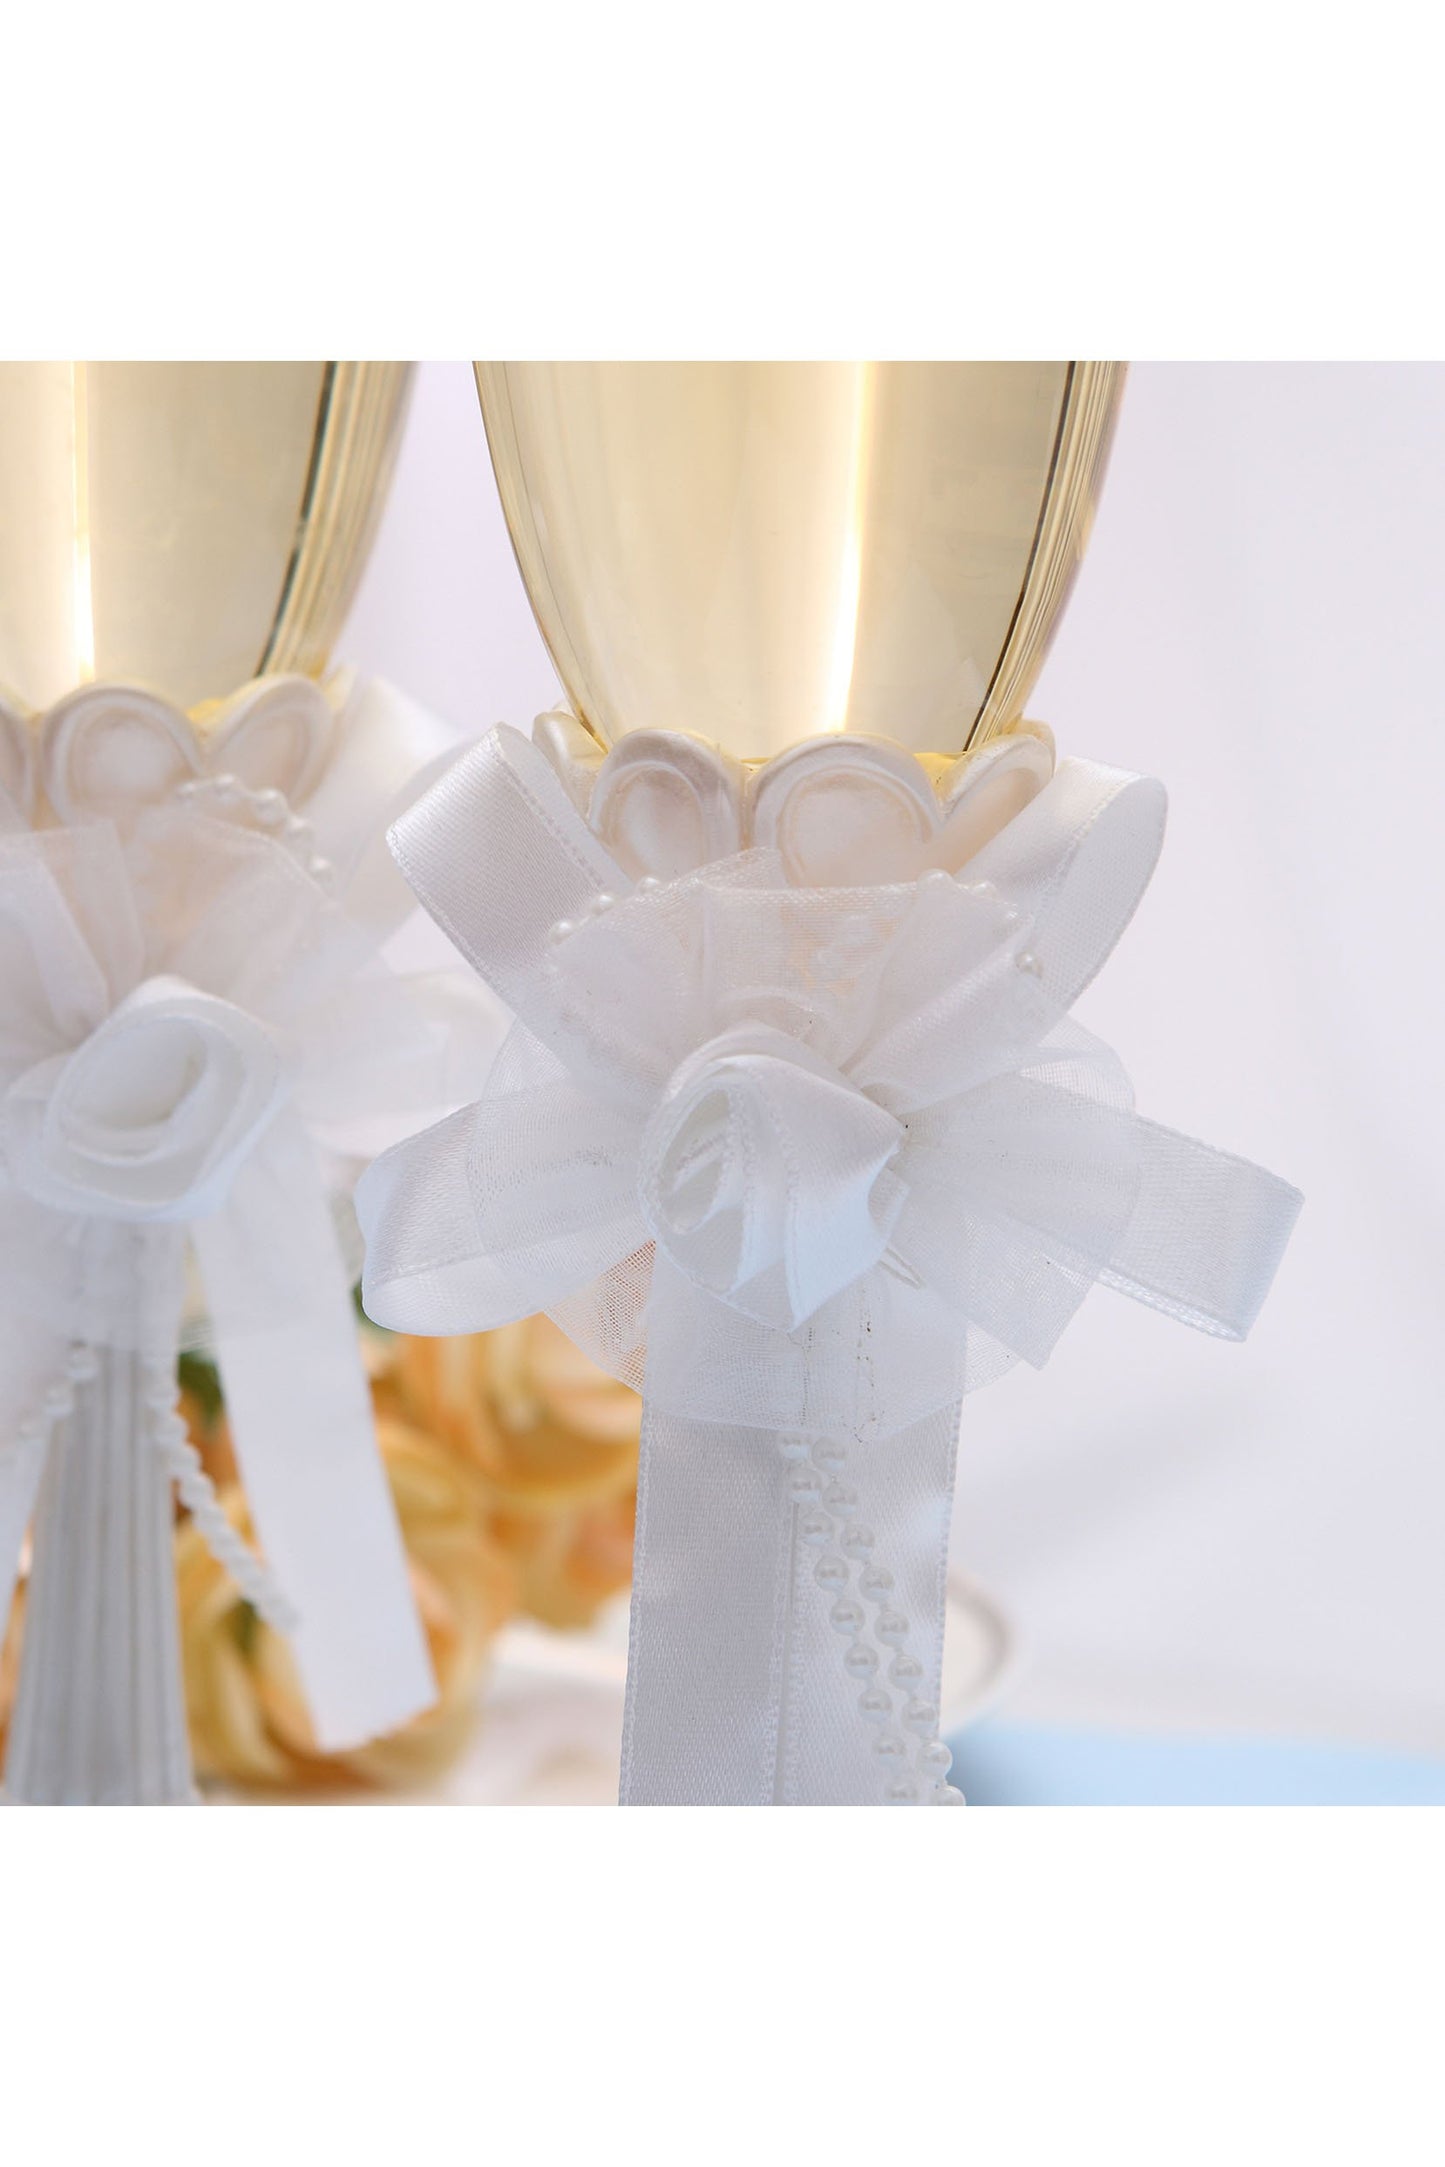 Elegance Wedding Champagne Glasses Set CGF0288 (Set of 1 pcs)